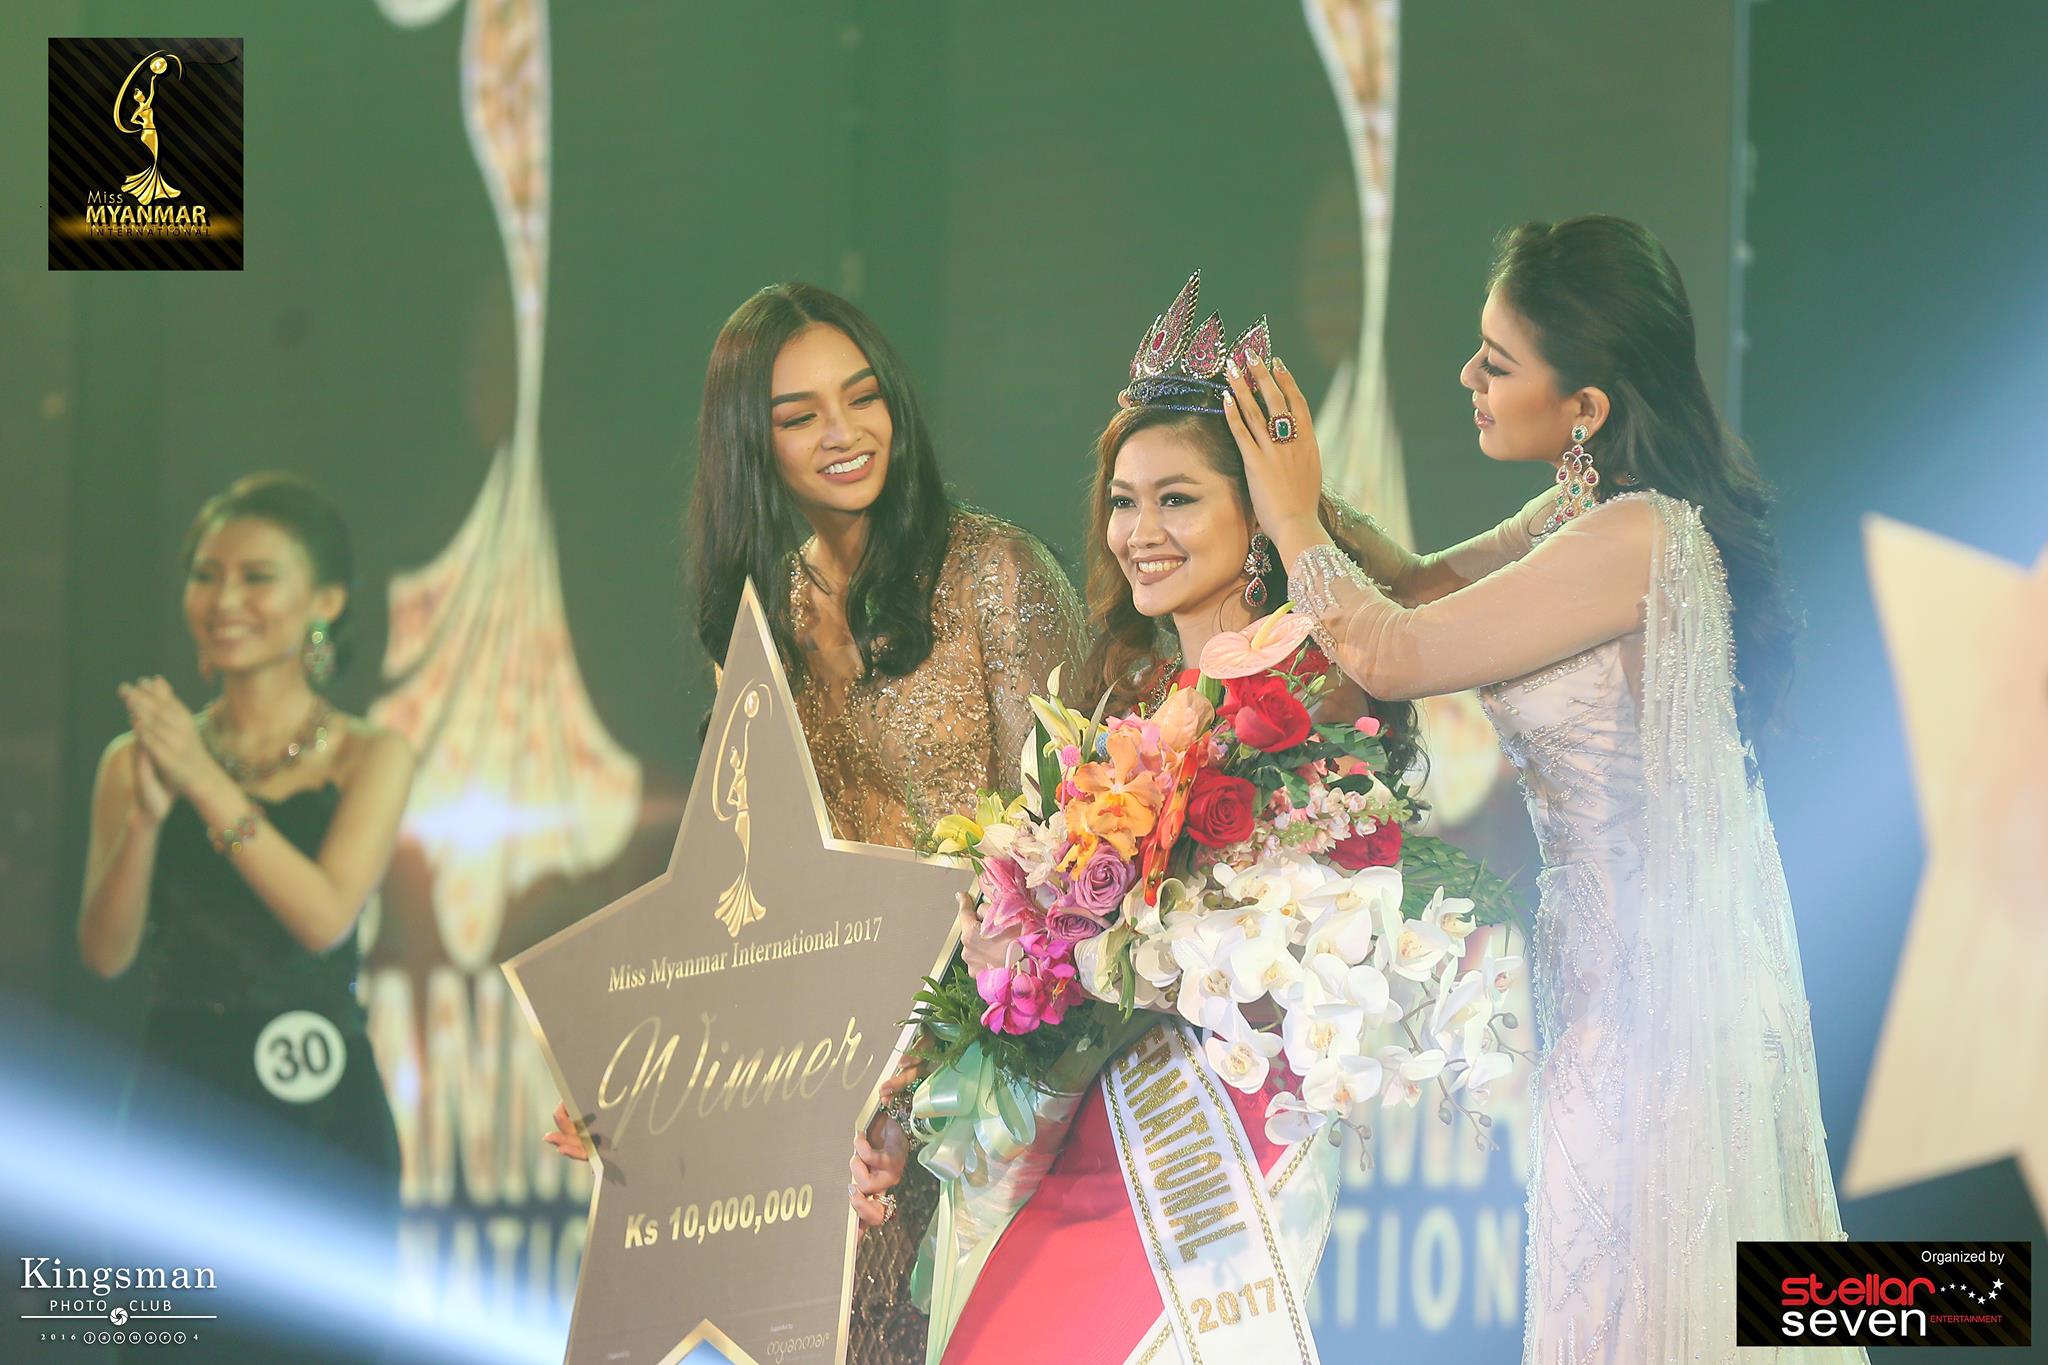 Sao Yoon Waddy Oo is crowned Miss Myanmar International 2017 as Miss International 2016 Kylie Verzosa (L) looks on. Photo: Facebook / Miss Myanmar International